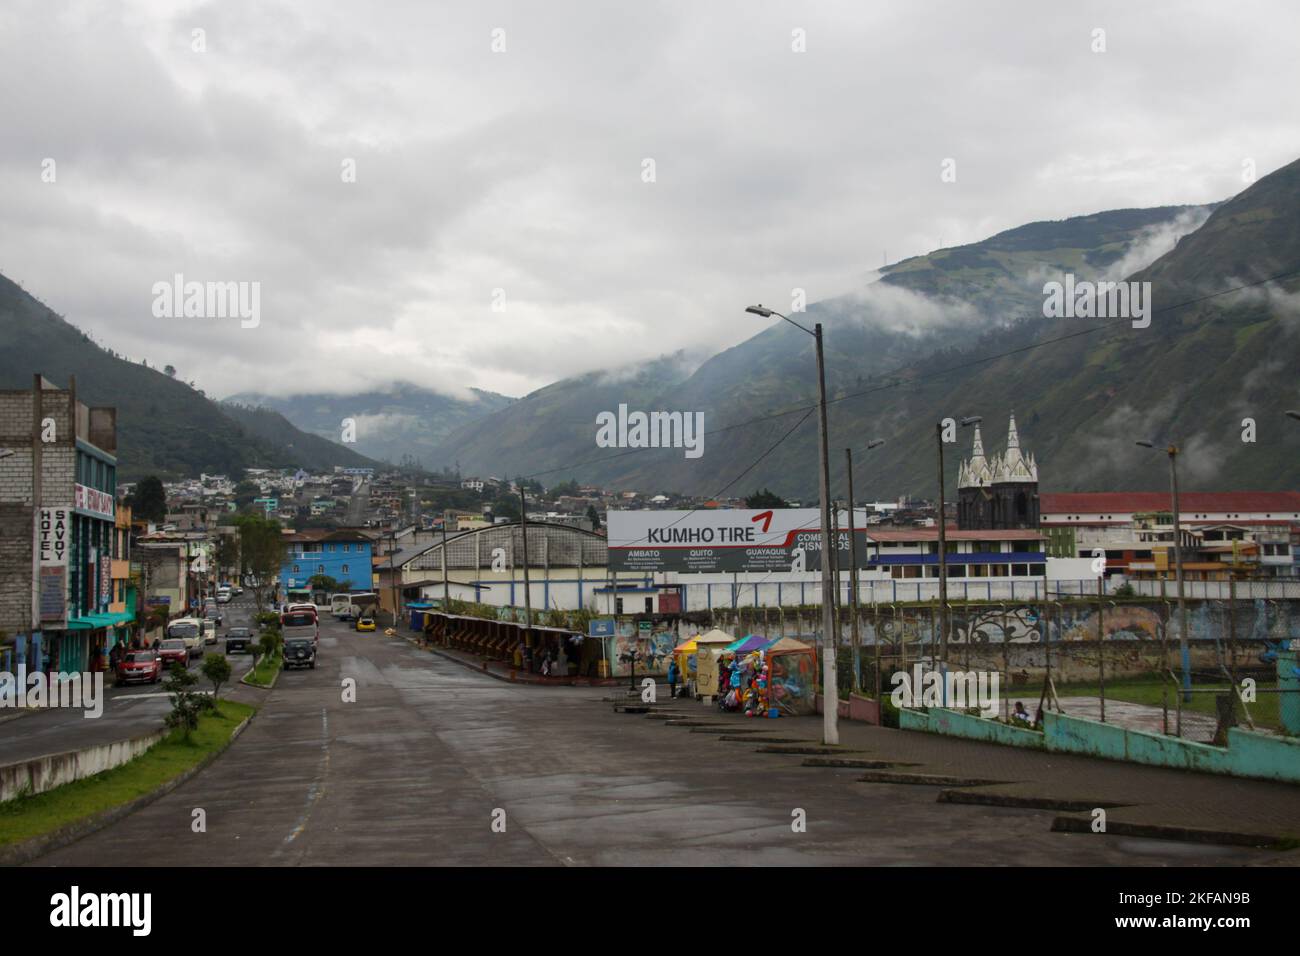 Paysage urbain de Banos, Équateur. Baños de Agua Santa communément appelé Baños, est une ville dans la province orientale de Tungurahua en Équateur. Banque D'Images